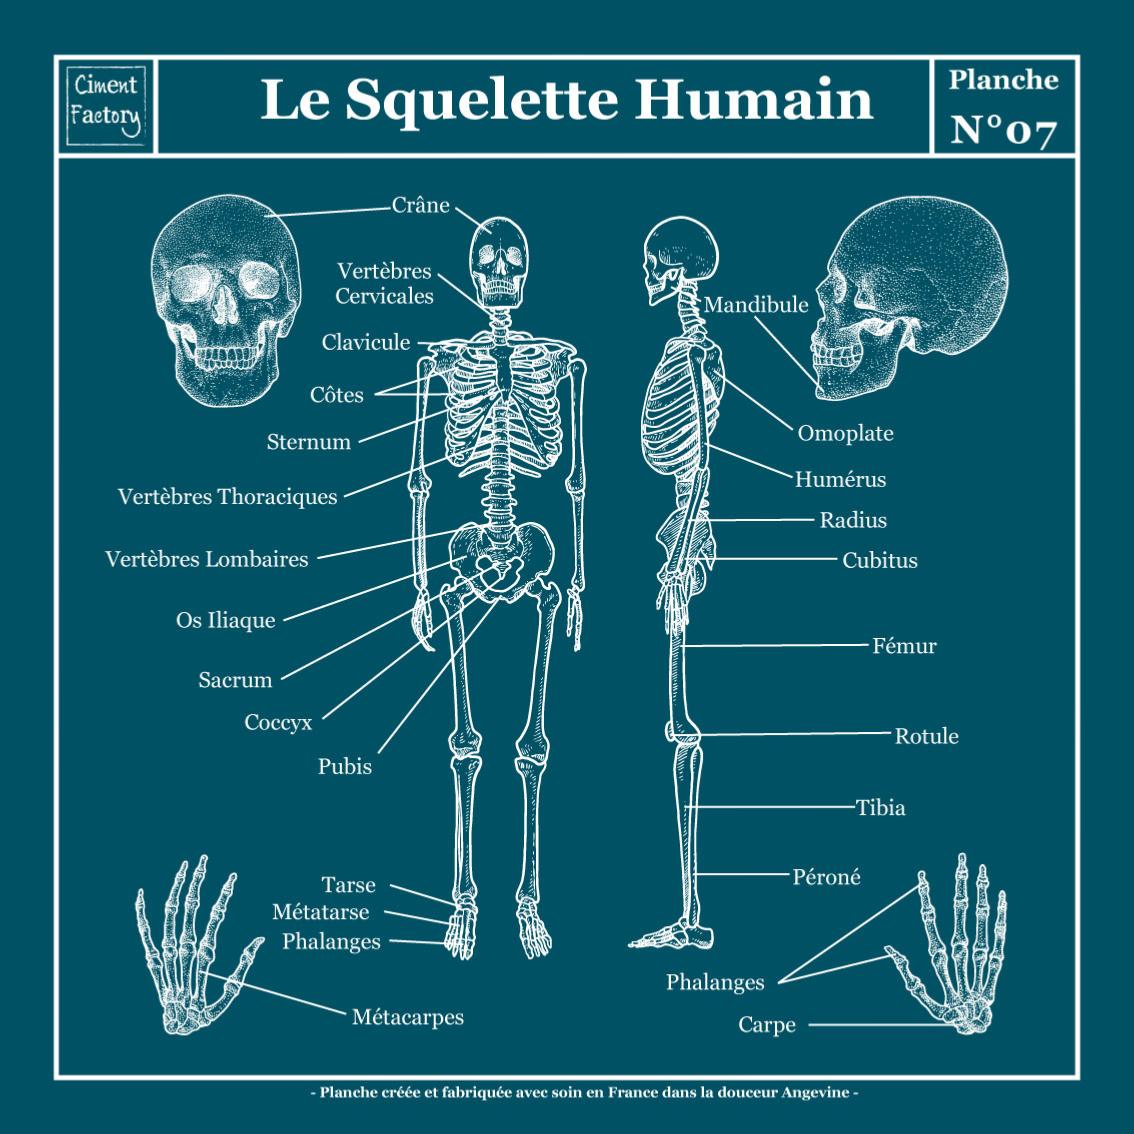 Planche Scolaire Murale- Anatomie- Squelette Humain- Bleu Canard Négatif-  40x40cm- Tableau Canvas